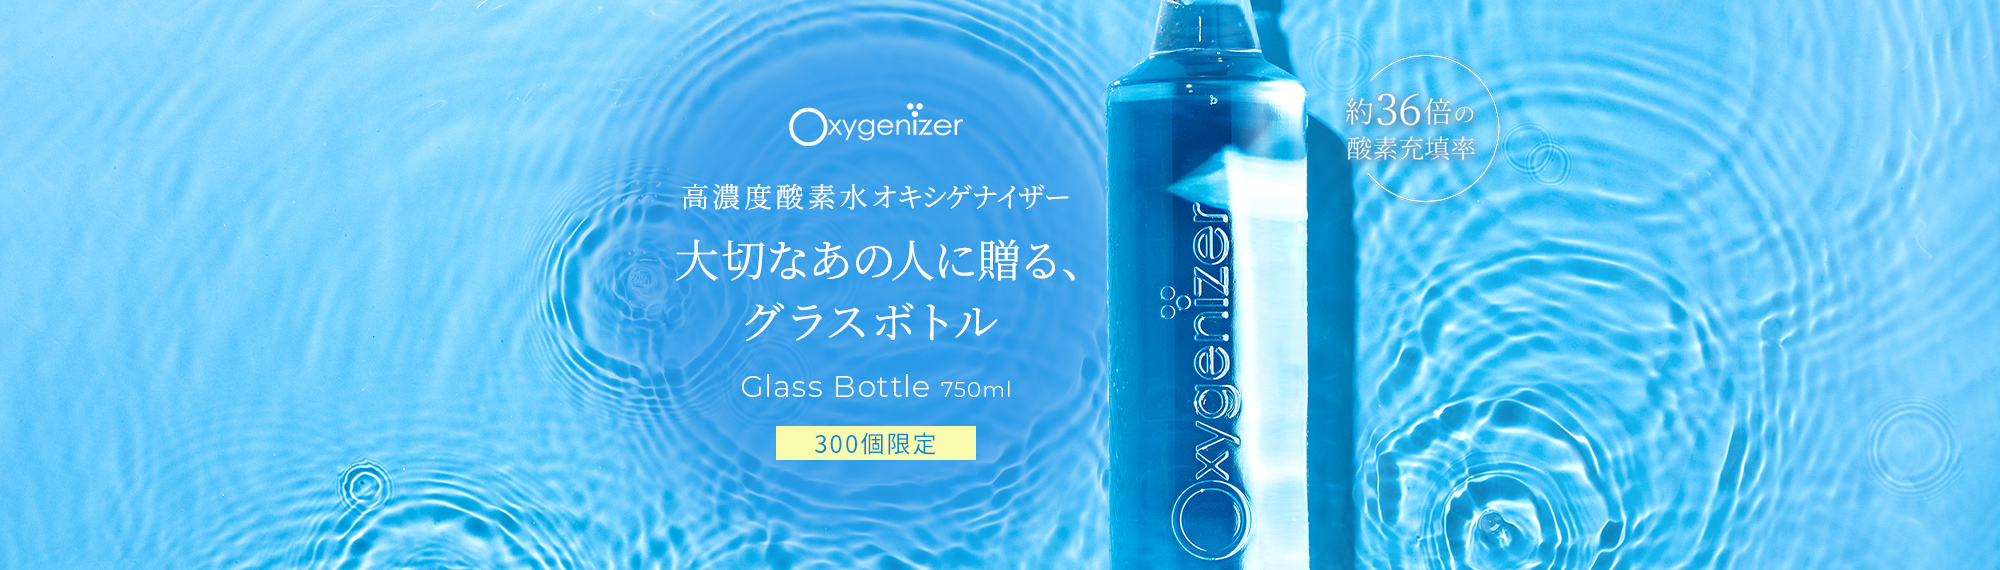 高濃度酸素水オキシゲナイザー 大切なあの人に贈る、グラスボトル